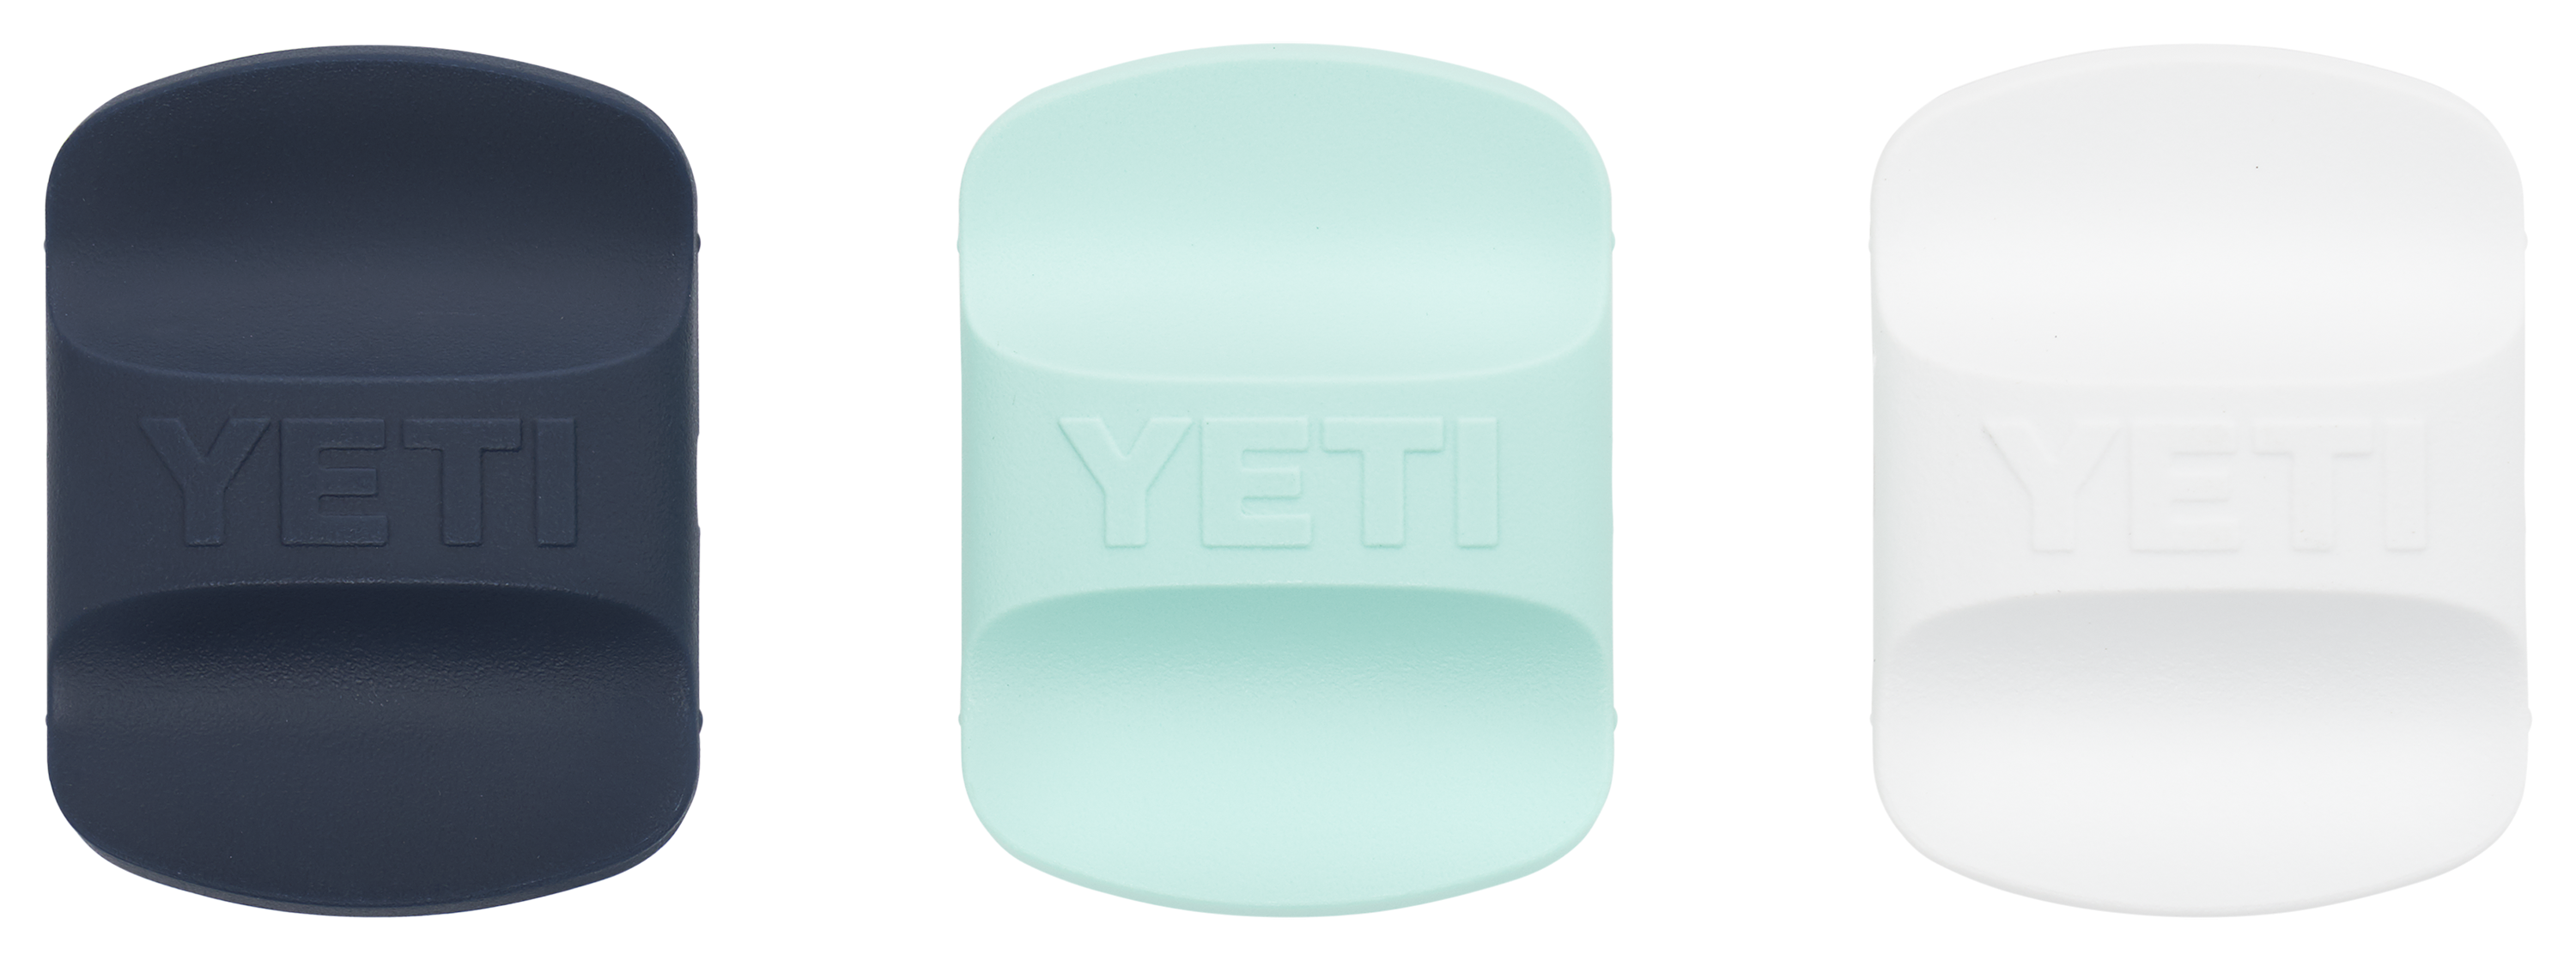 YETI Yeti Magslider Replacement Kit Core